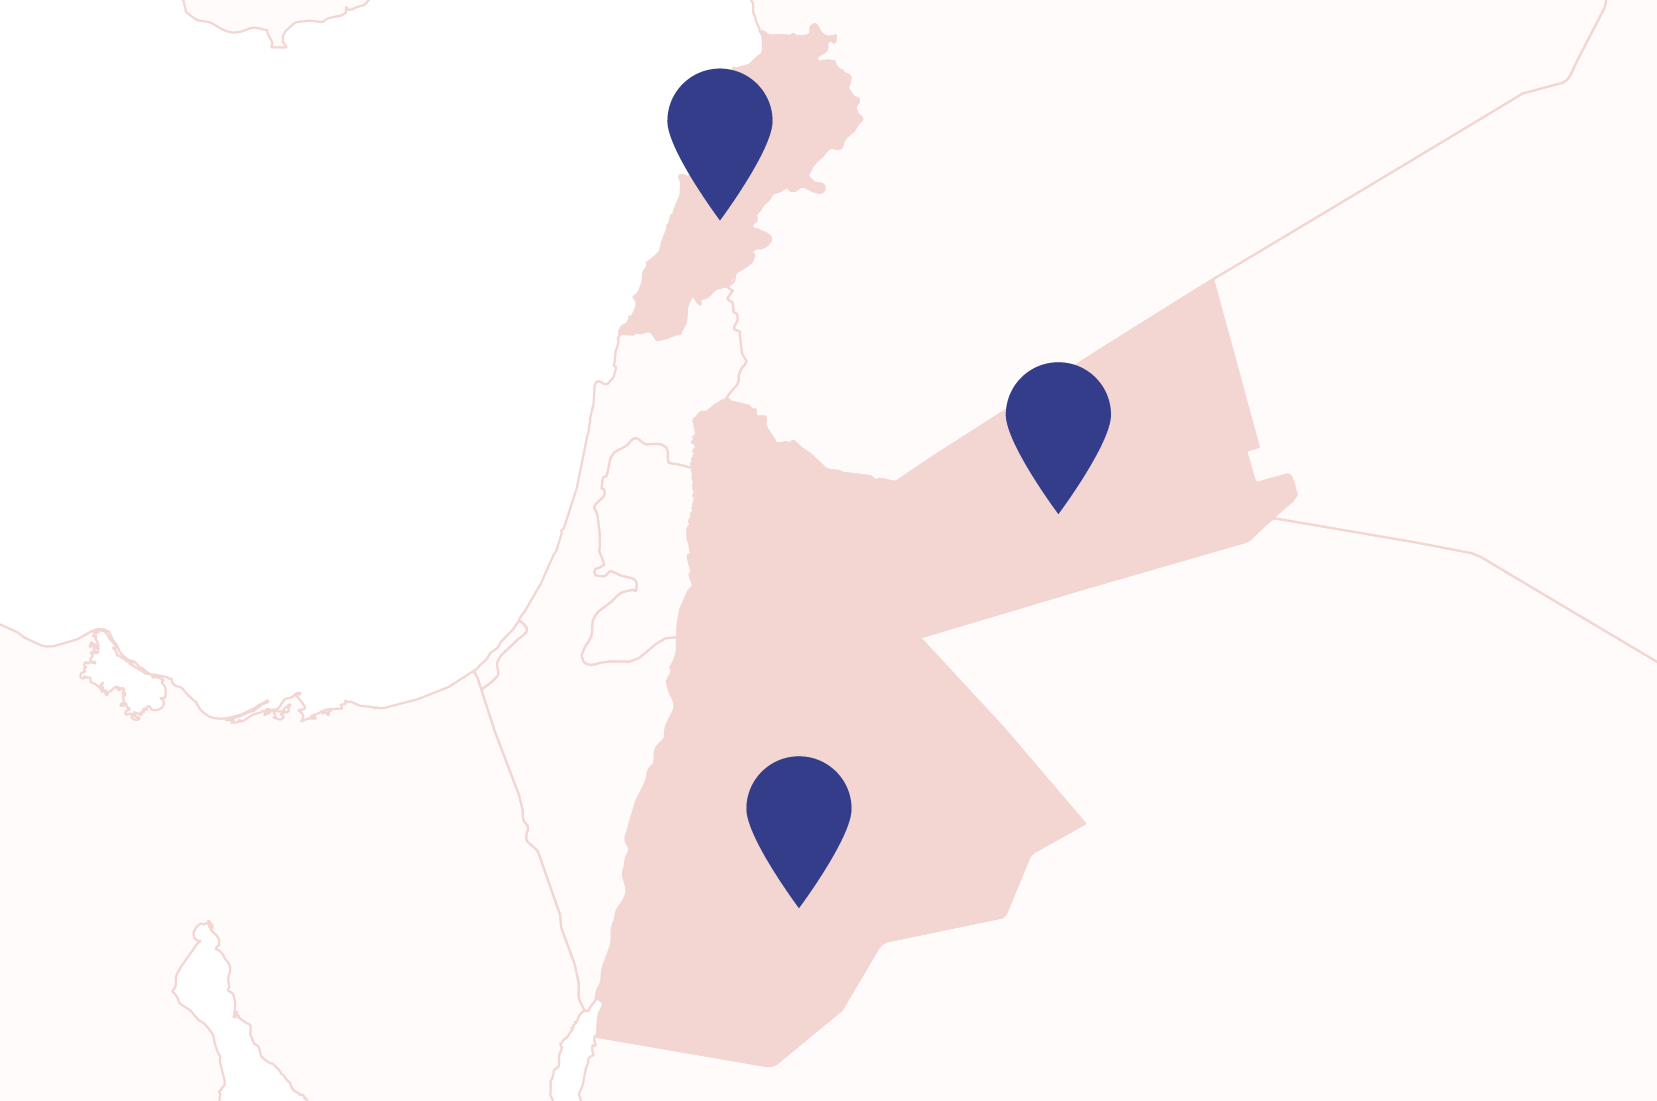 Map showing Jordan and Lebanon